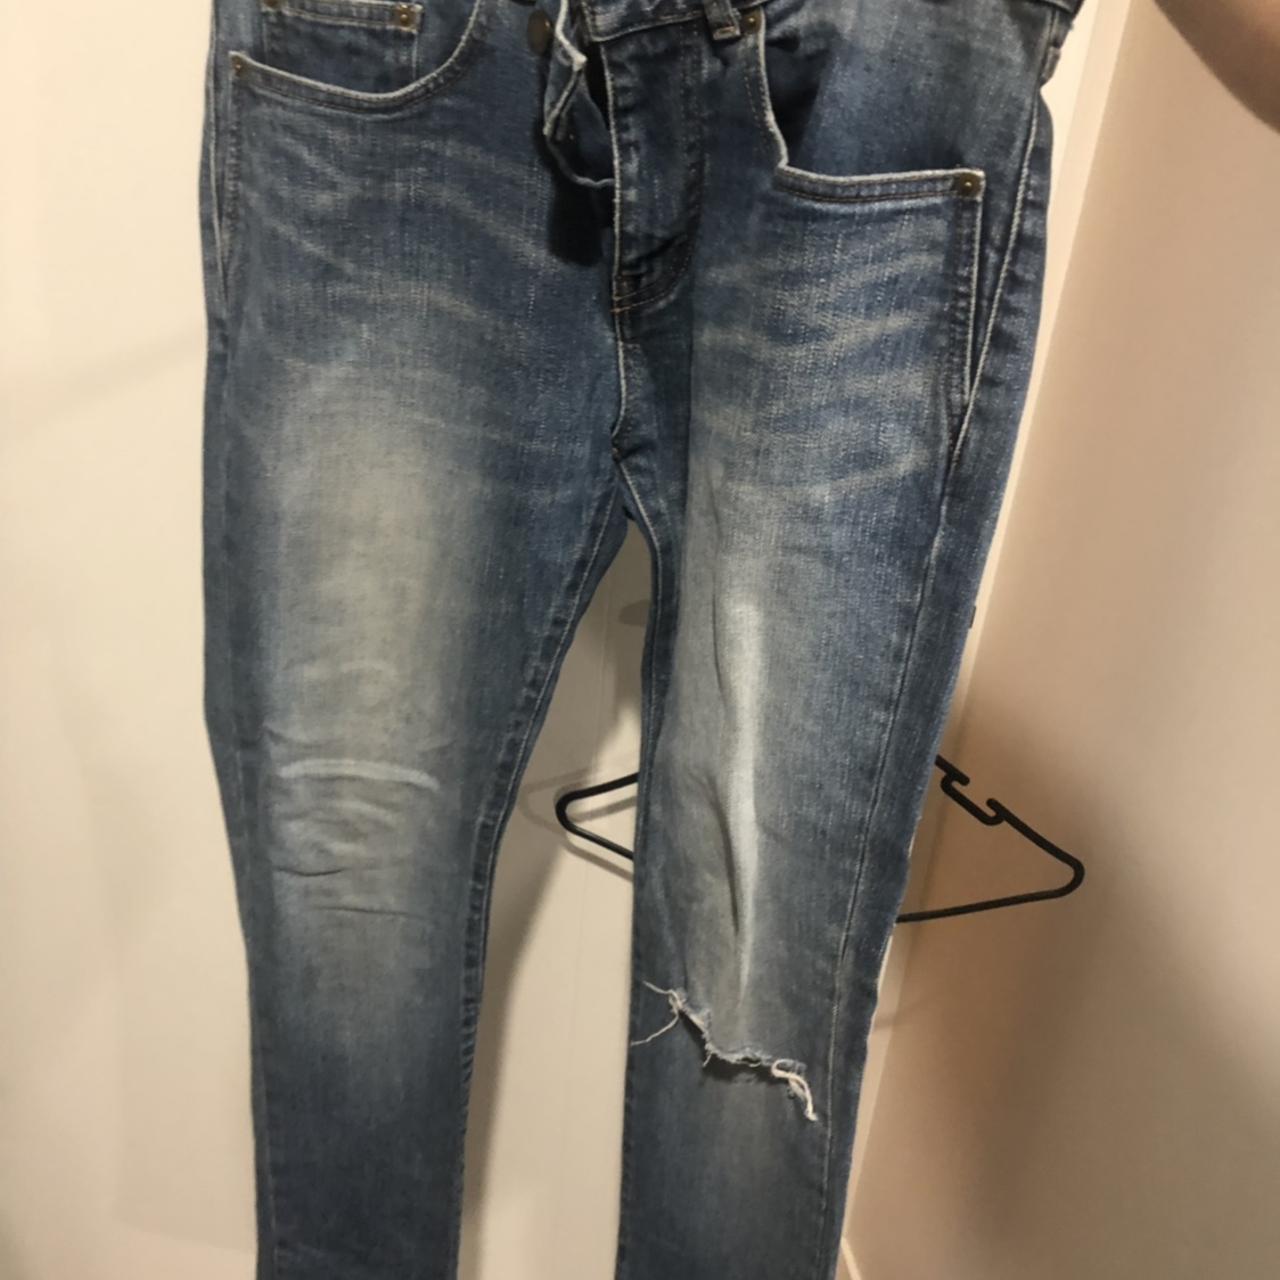 Saint Laurent Jeans size 32 Never worn Condition... - Depop